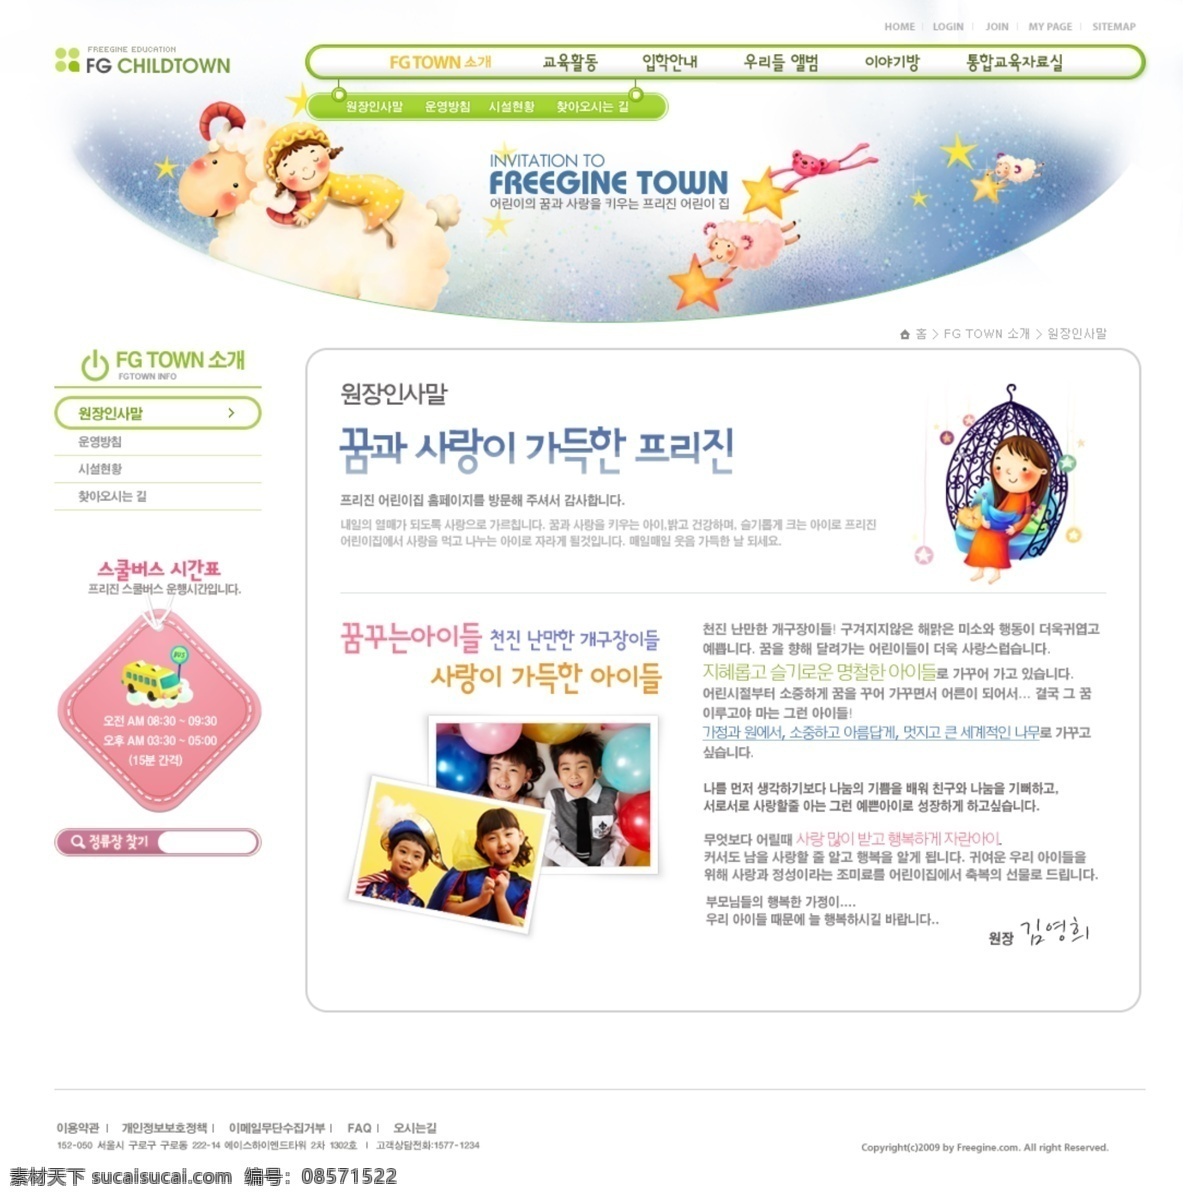 韩国 网页模板 韩国网页模板 绿色模板 韩国可爱模板 韩国卡通模板 卡通风格模板 卡通风格 儿童模板 网页素材